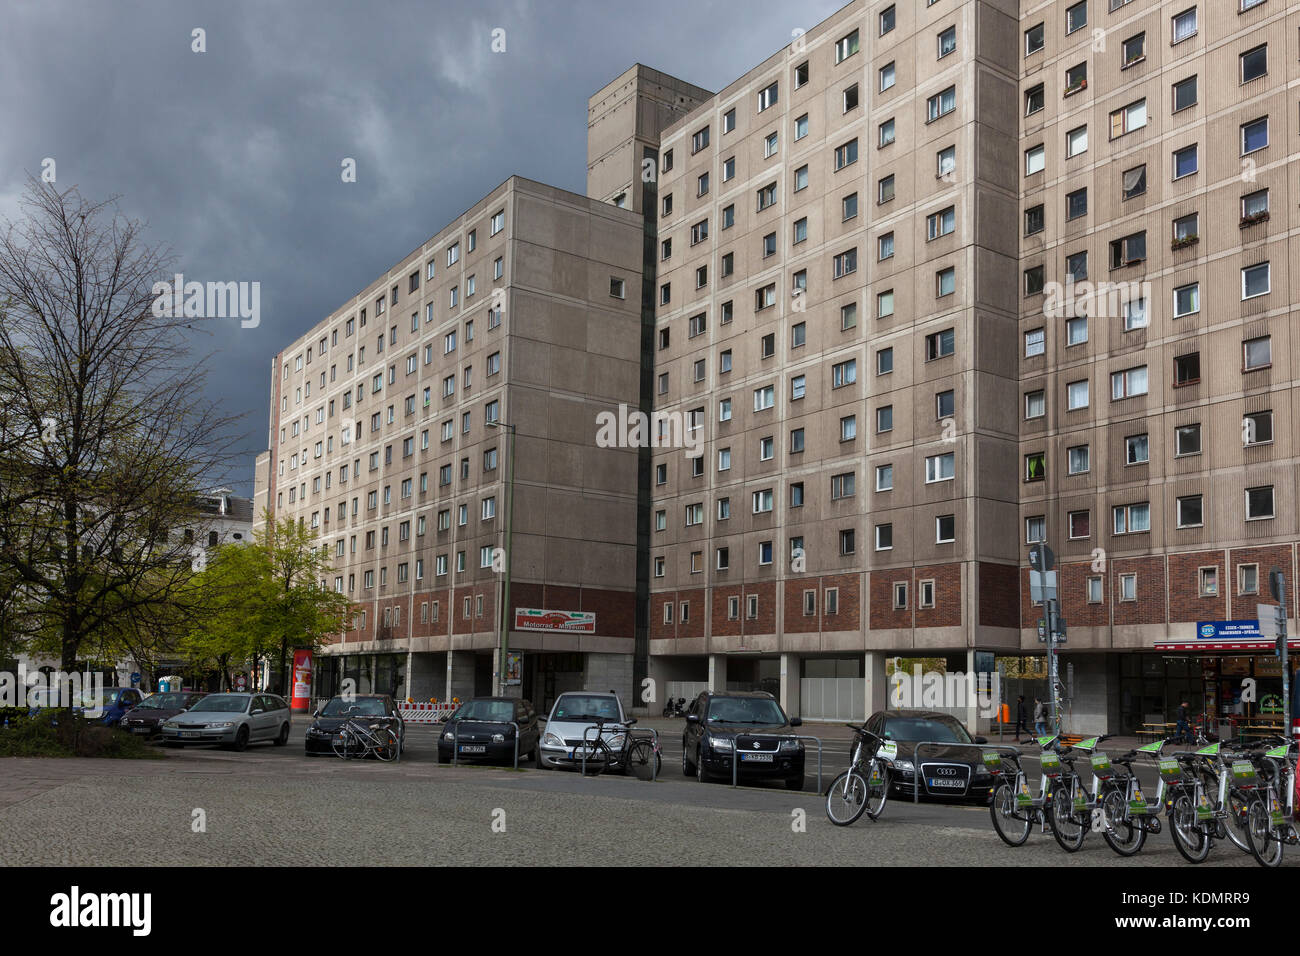 Bloque de viviendas de la posguerra, Berlín, Alemania Foto de stock